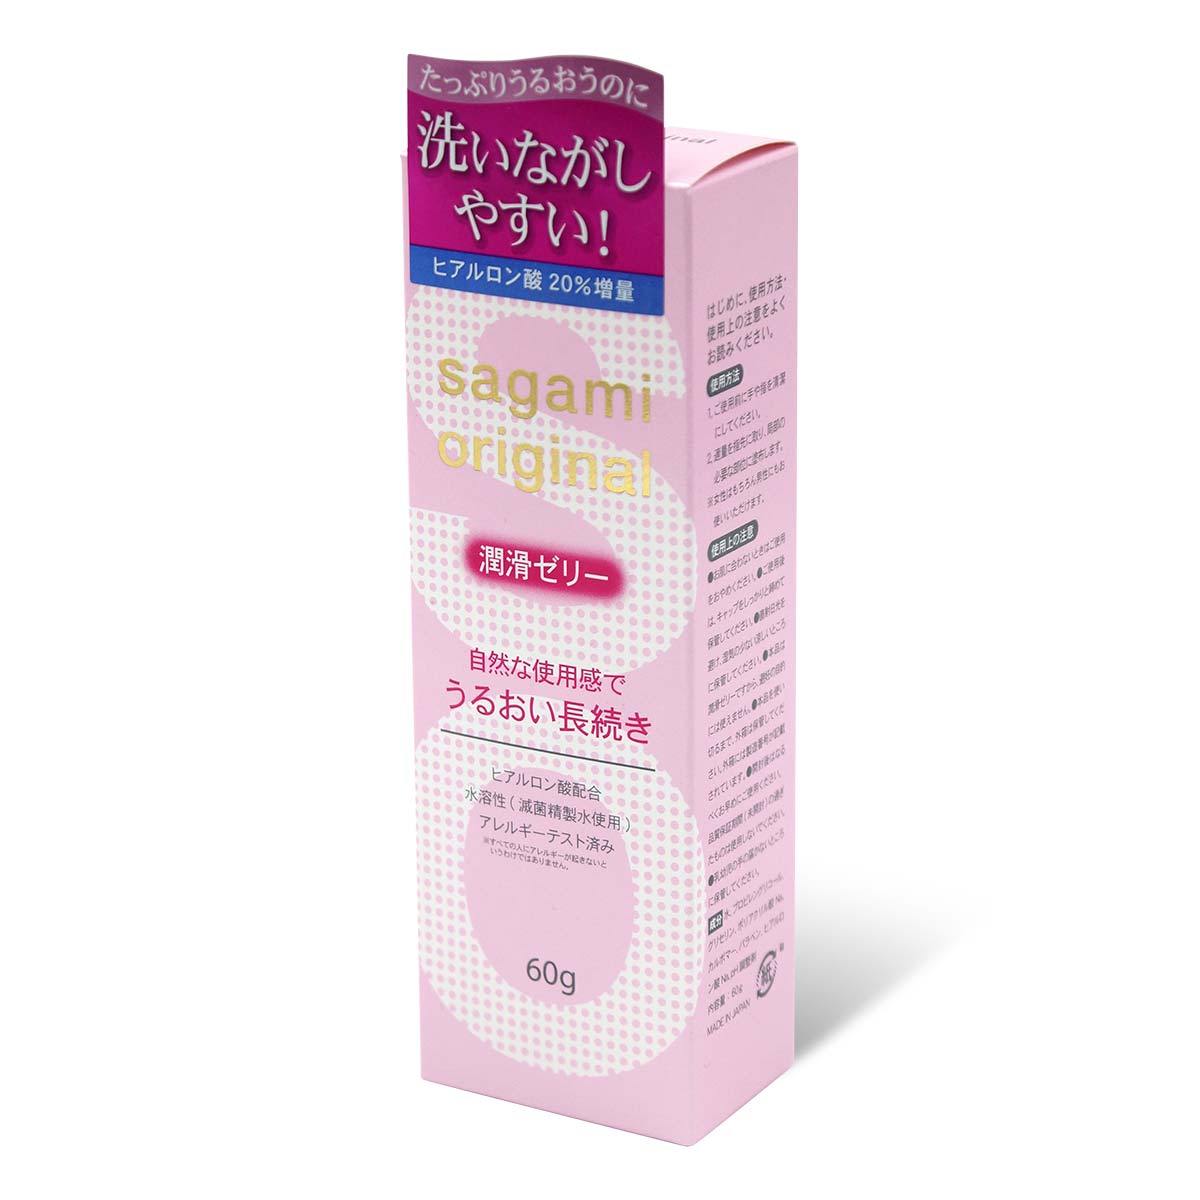 Sagami Original Lubricating Gel 60g Water-based Lubricant-thumb_1